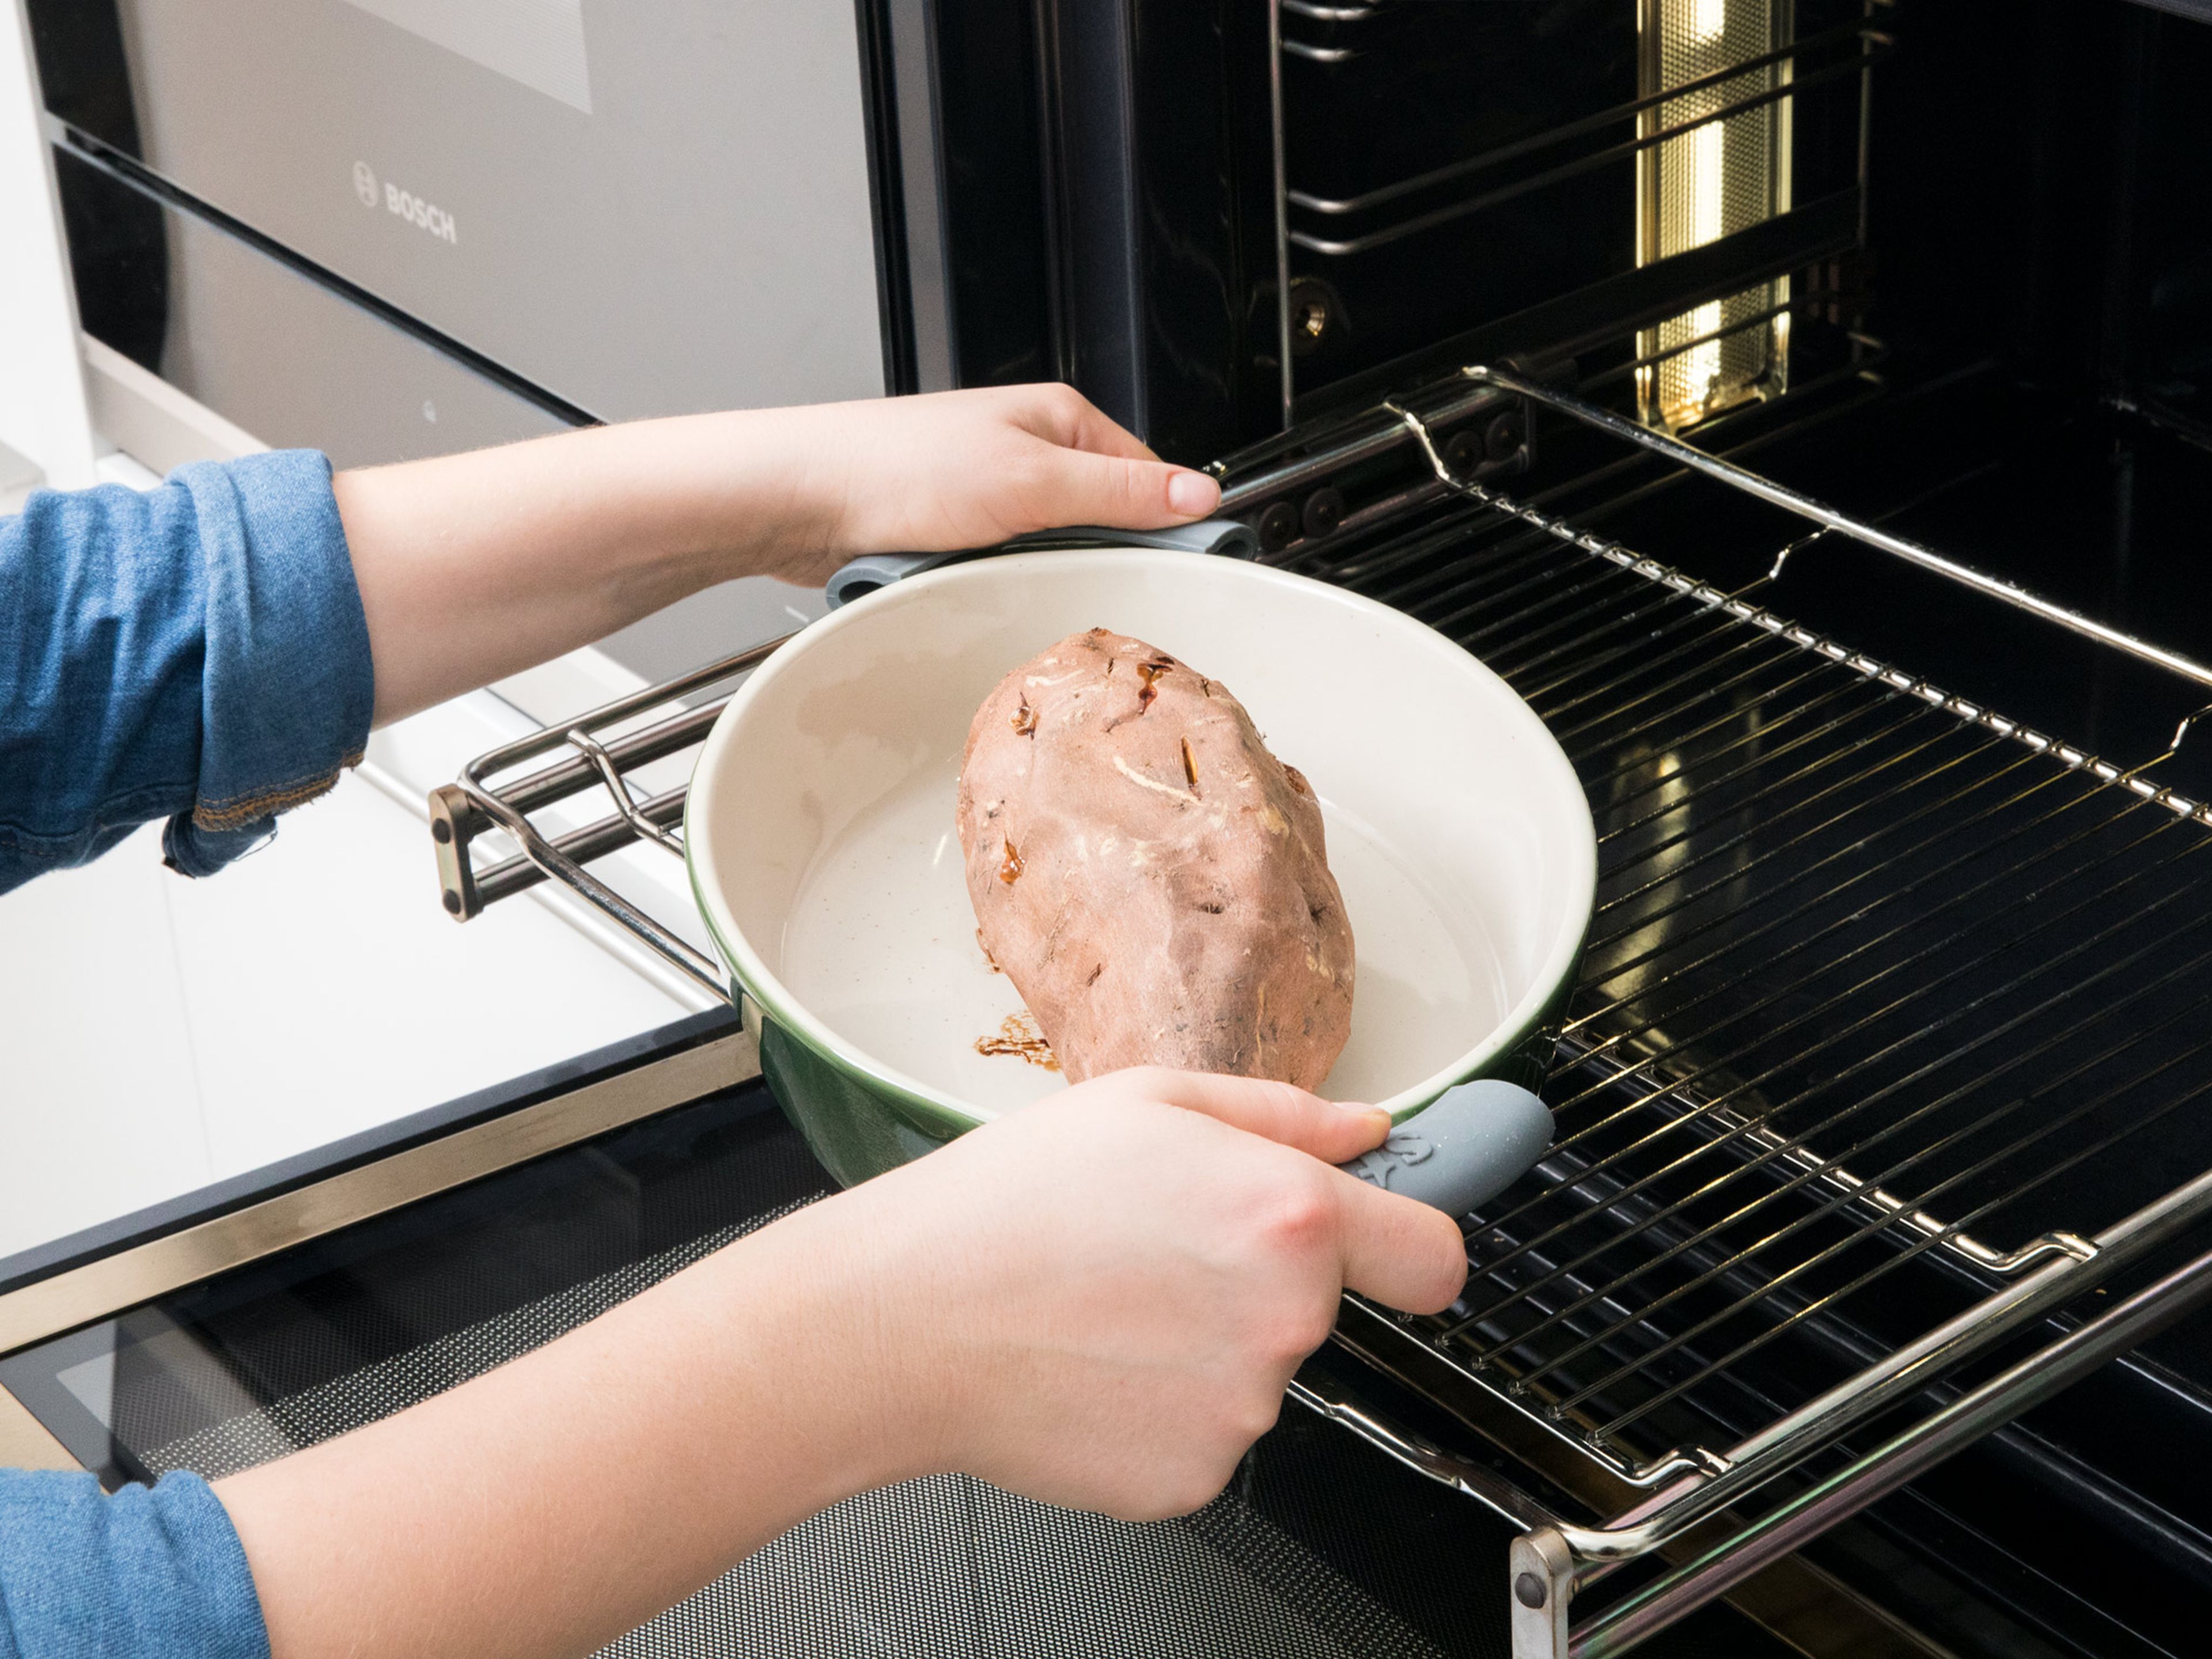 Backofen auf 180°C vorheizen. Süßkartoffeln mit einer Gabel mehrmals einstechen. Auf einem mit Backpapier ausgelegten Backblech bei 180°C für ca. 45 – 60 Min. backen. Auskühlen lassen.